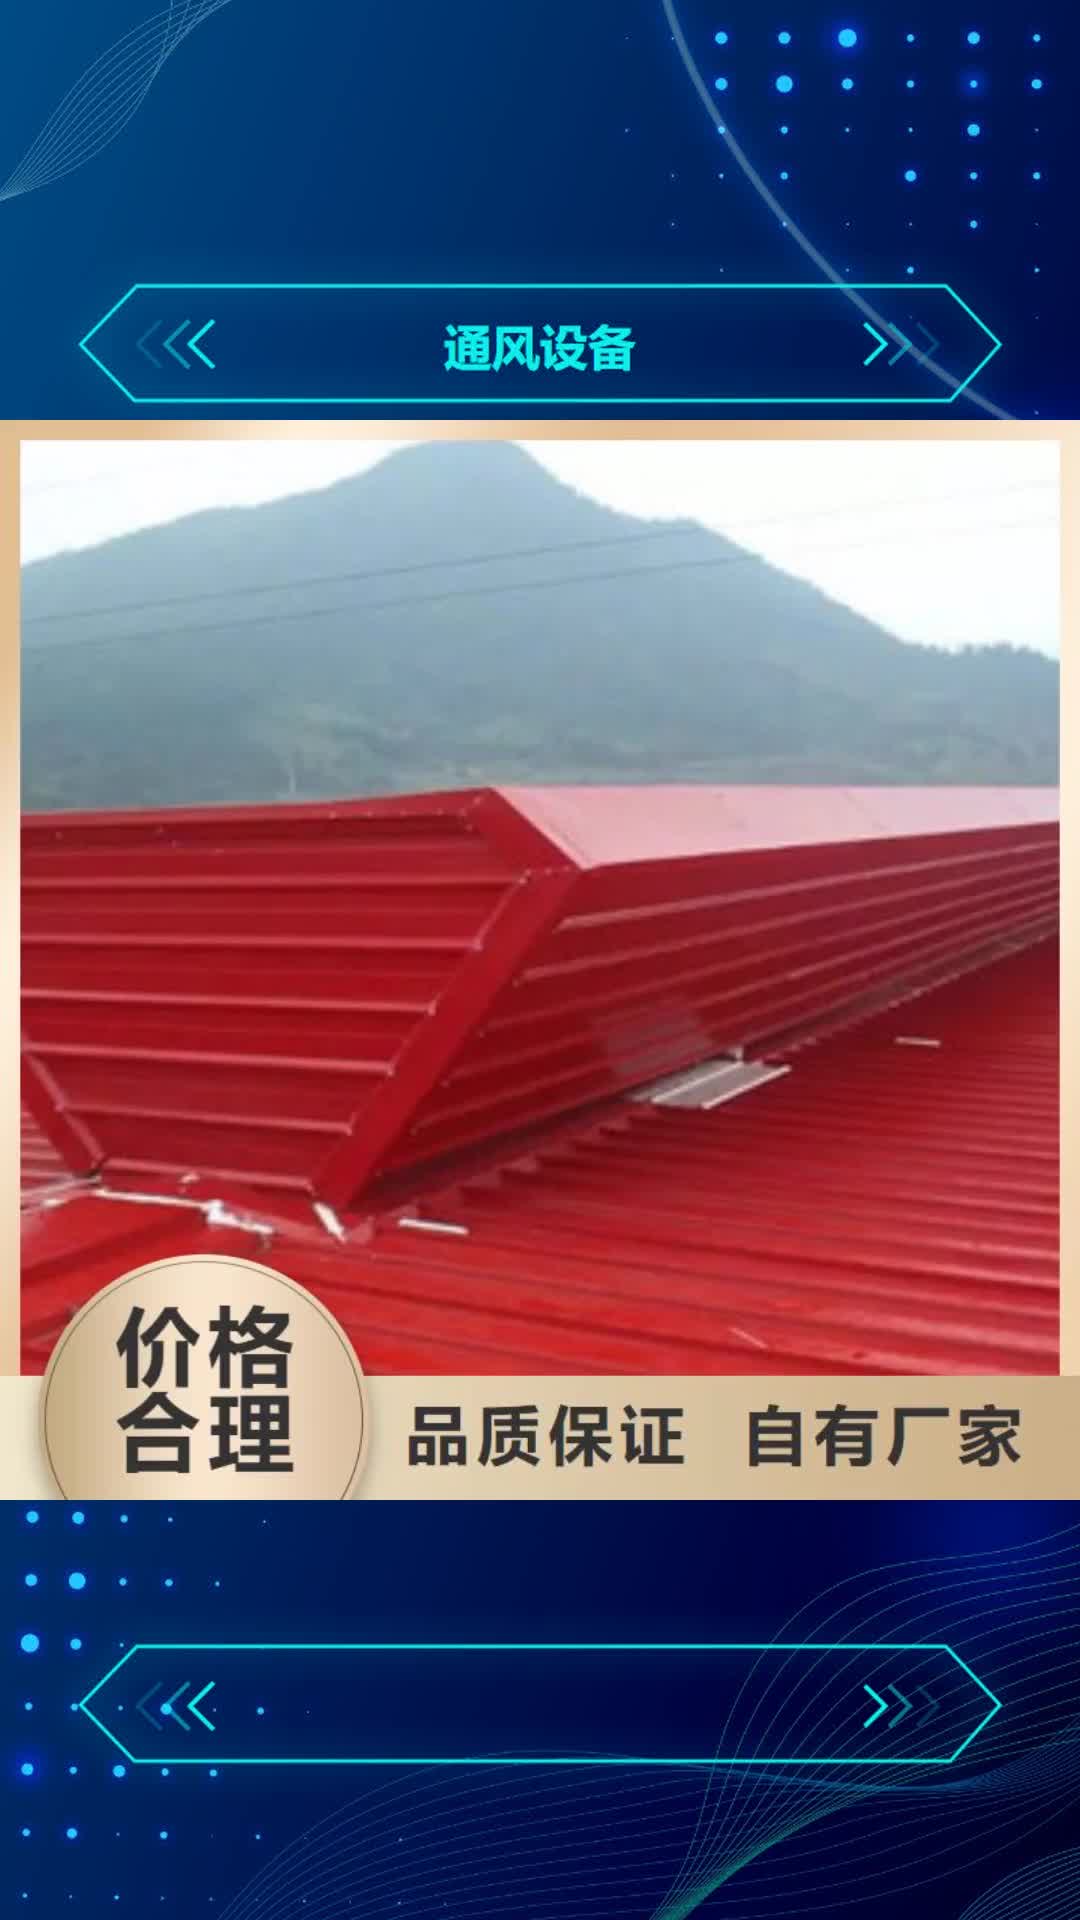 湘潭【通风设备】,屋顶通风器适用范围广